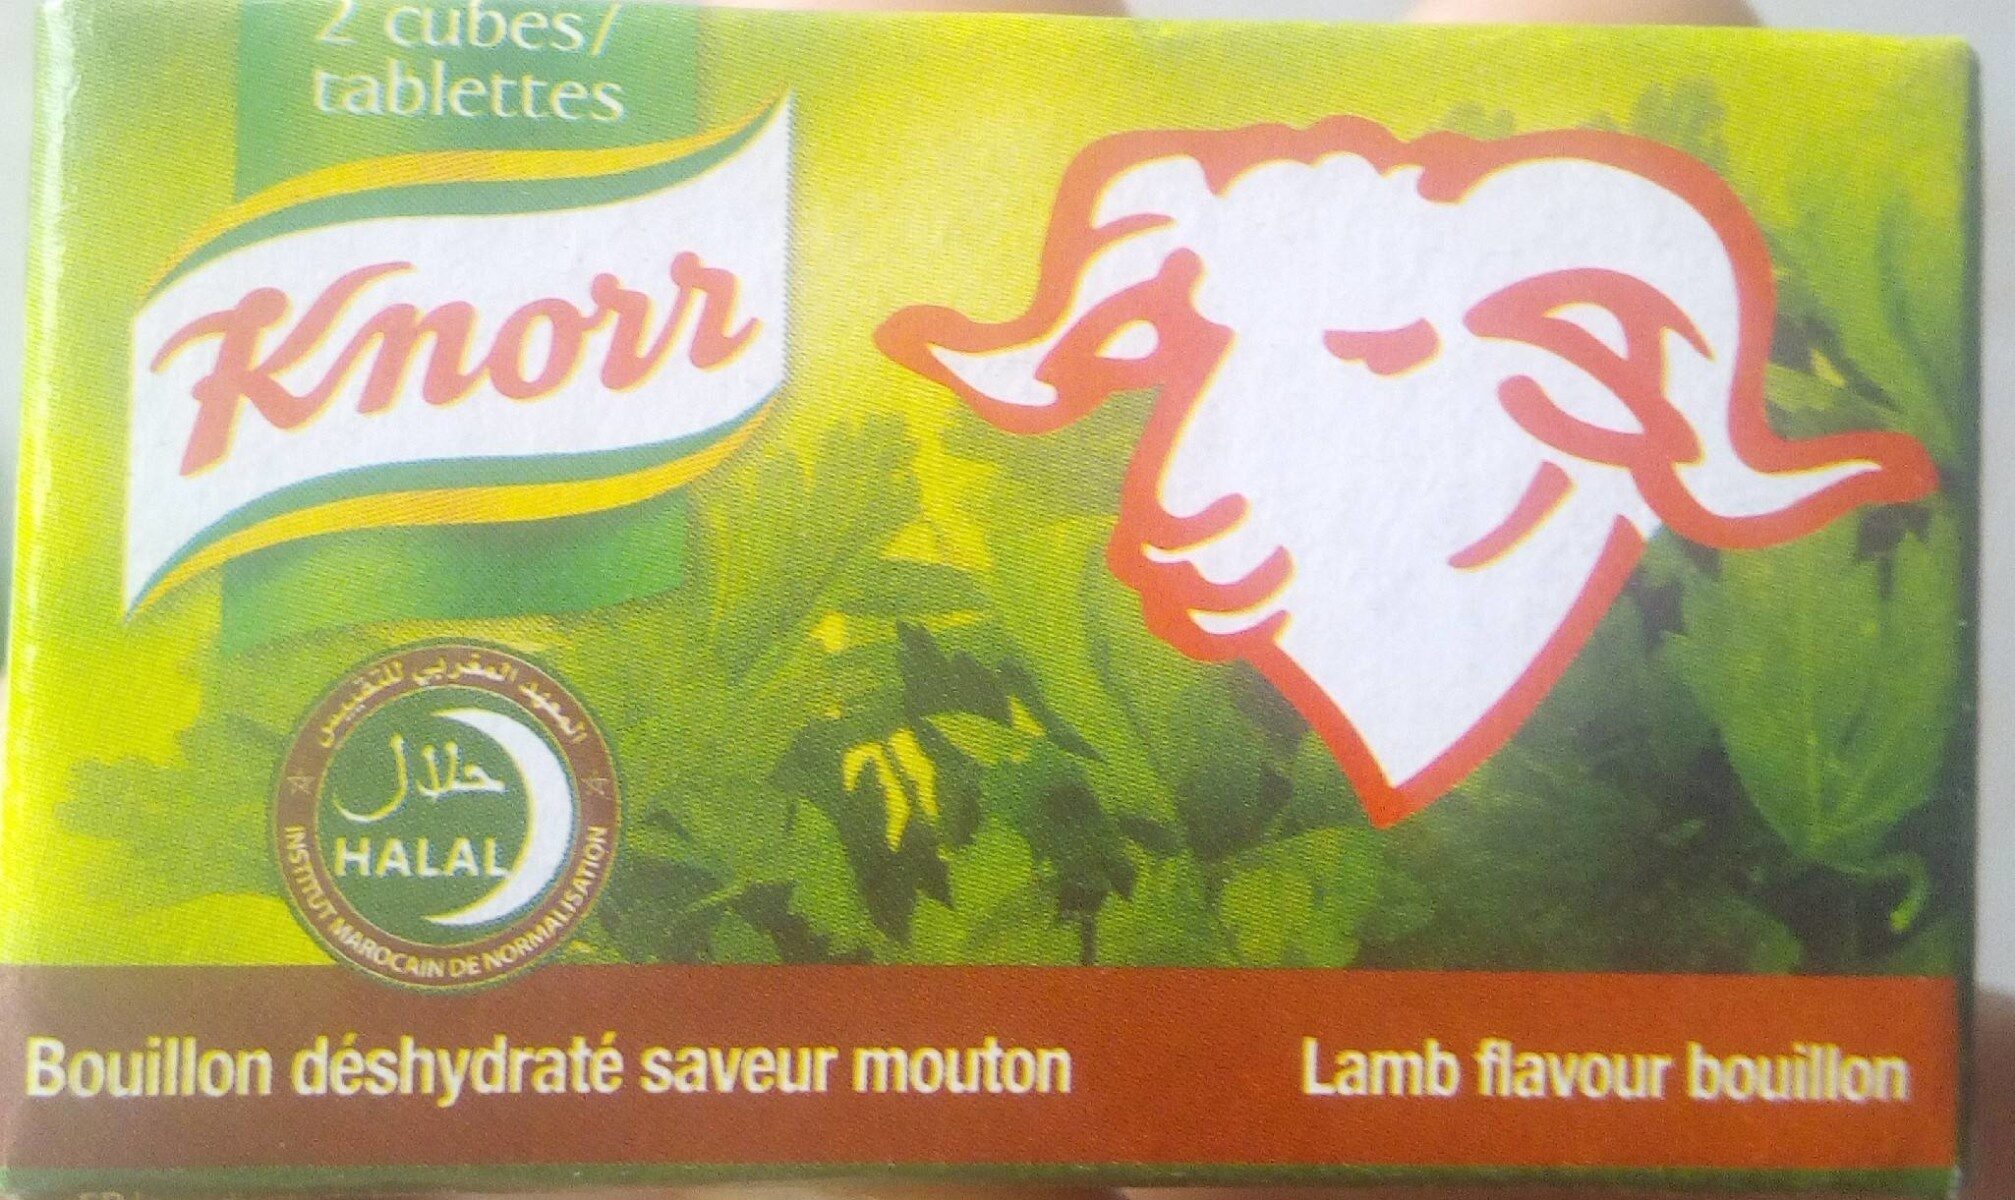 Lamb flavour bouillon - Nutrition facts - es